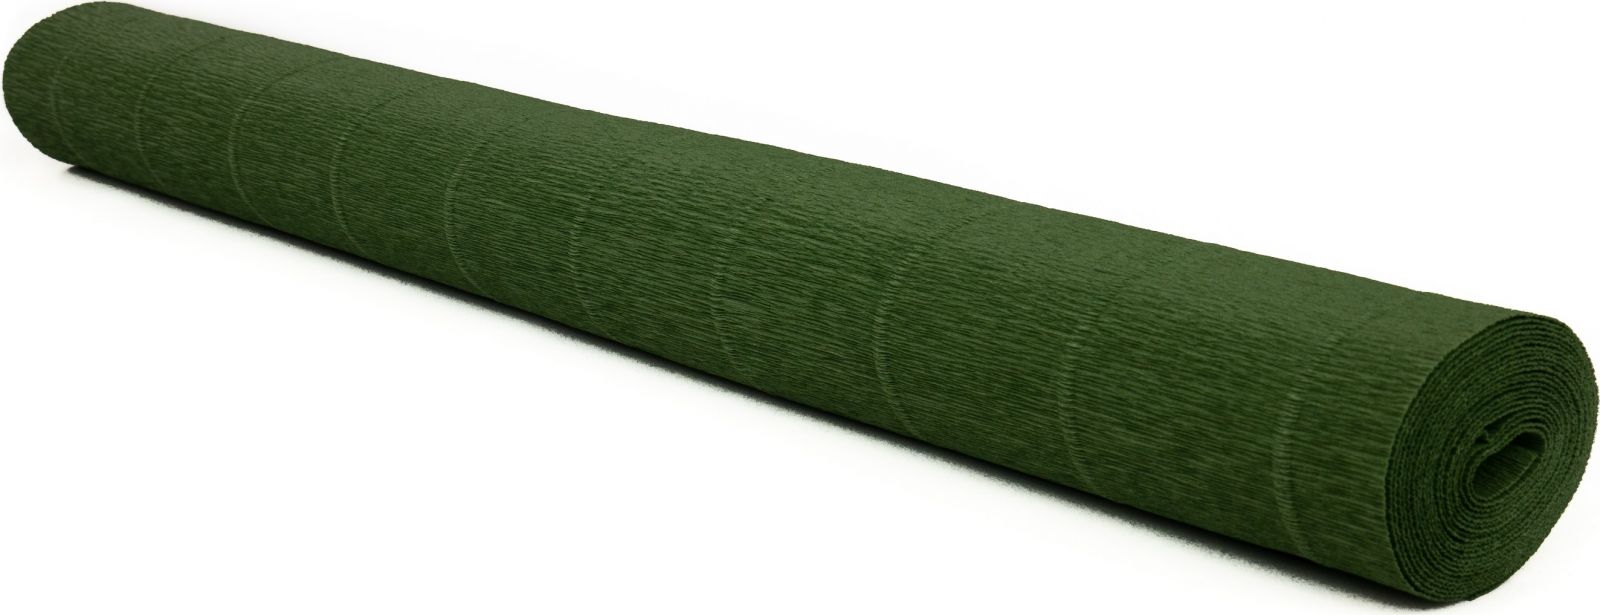 Krepový papír EXTRA pevný 180g, 50x200cm - k výrobě květů a jiné dekorace - Jedlová zelená